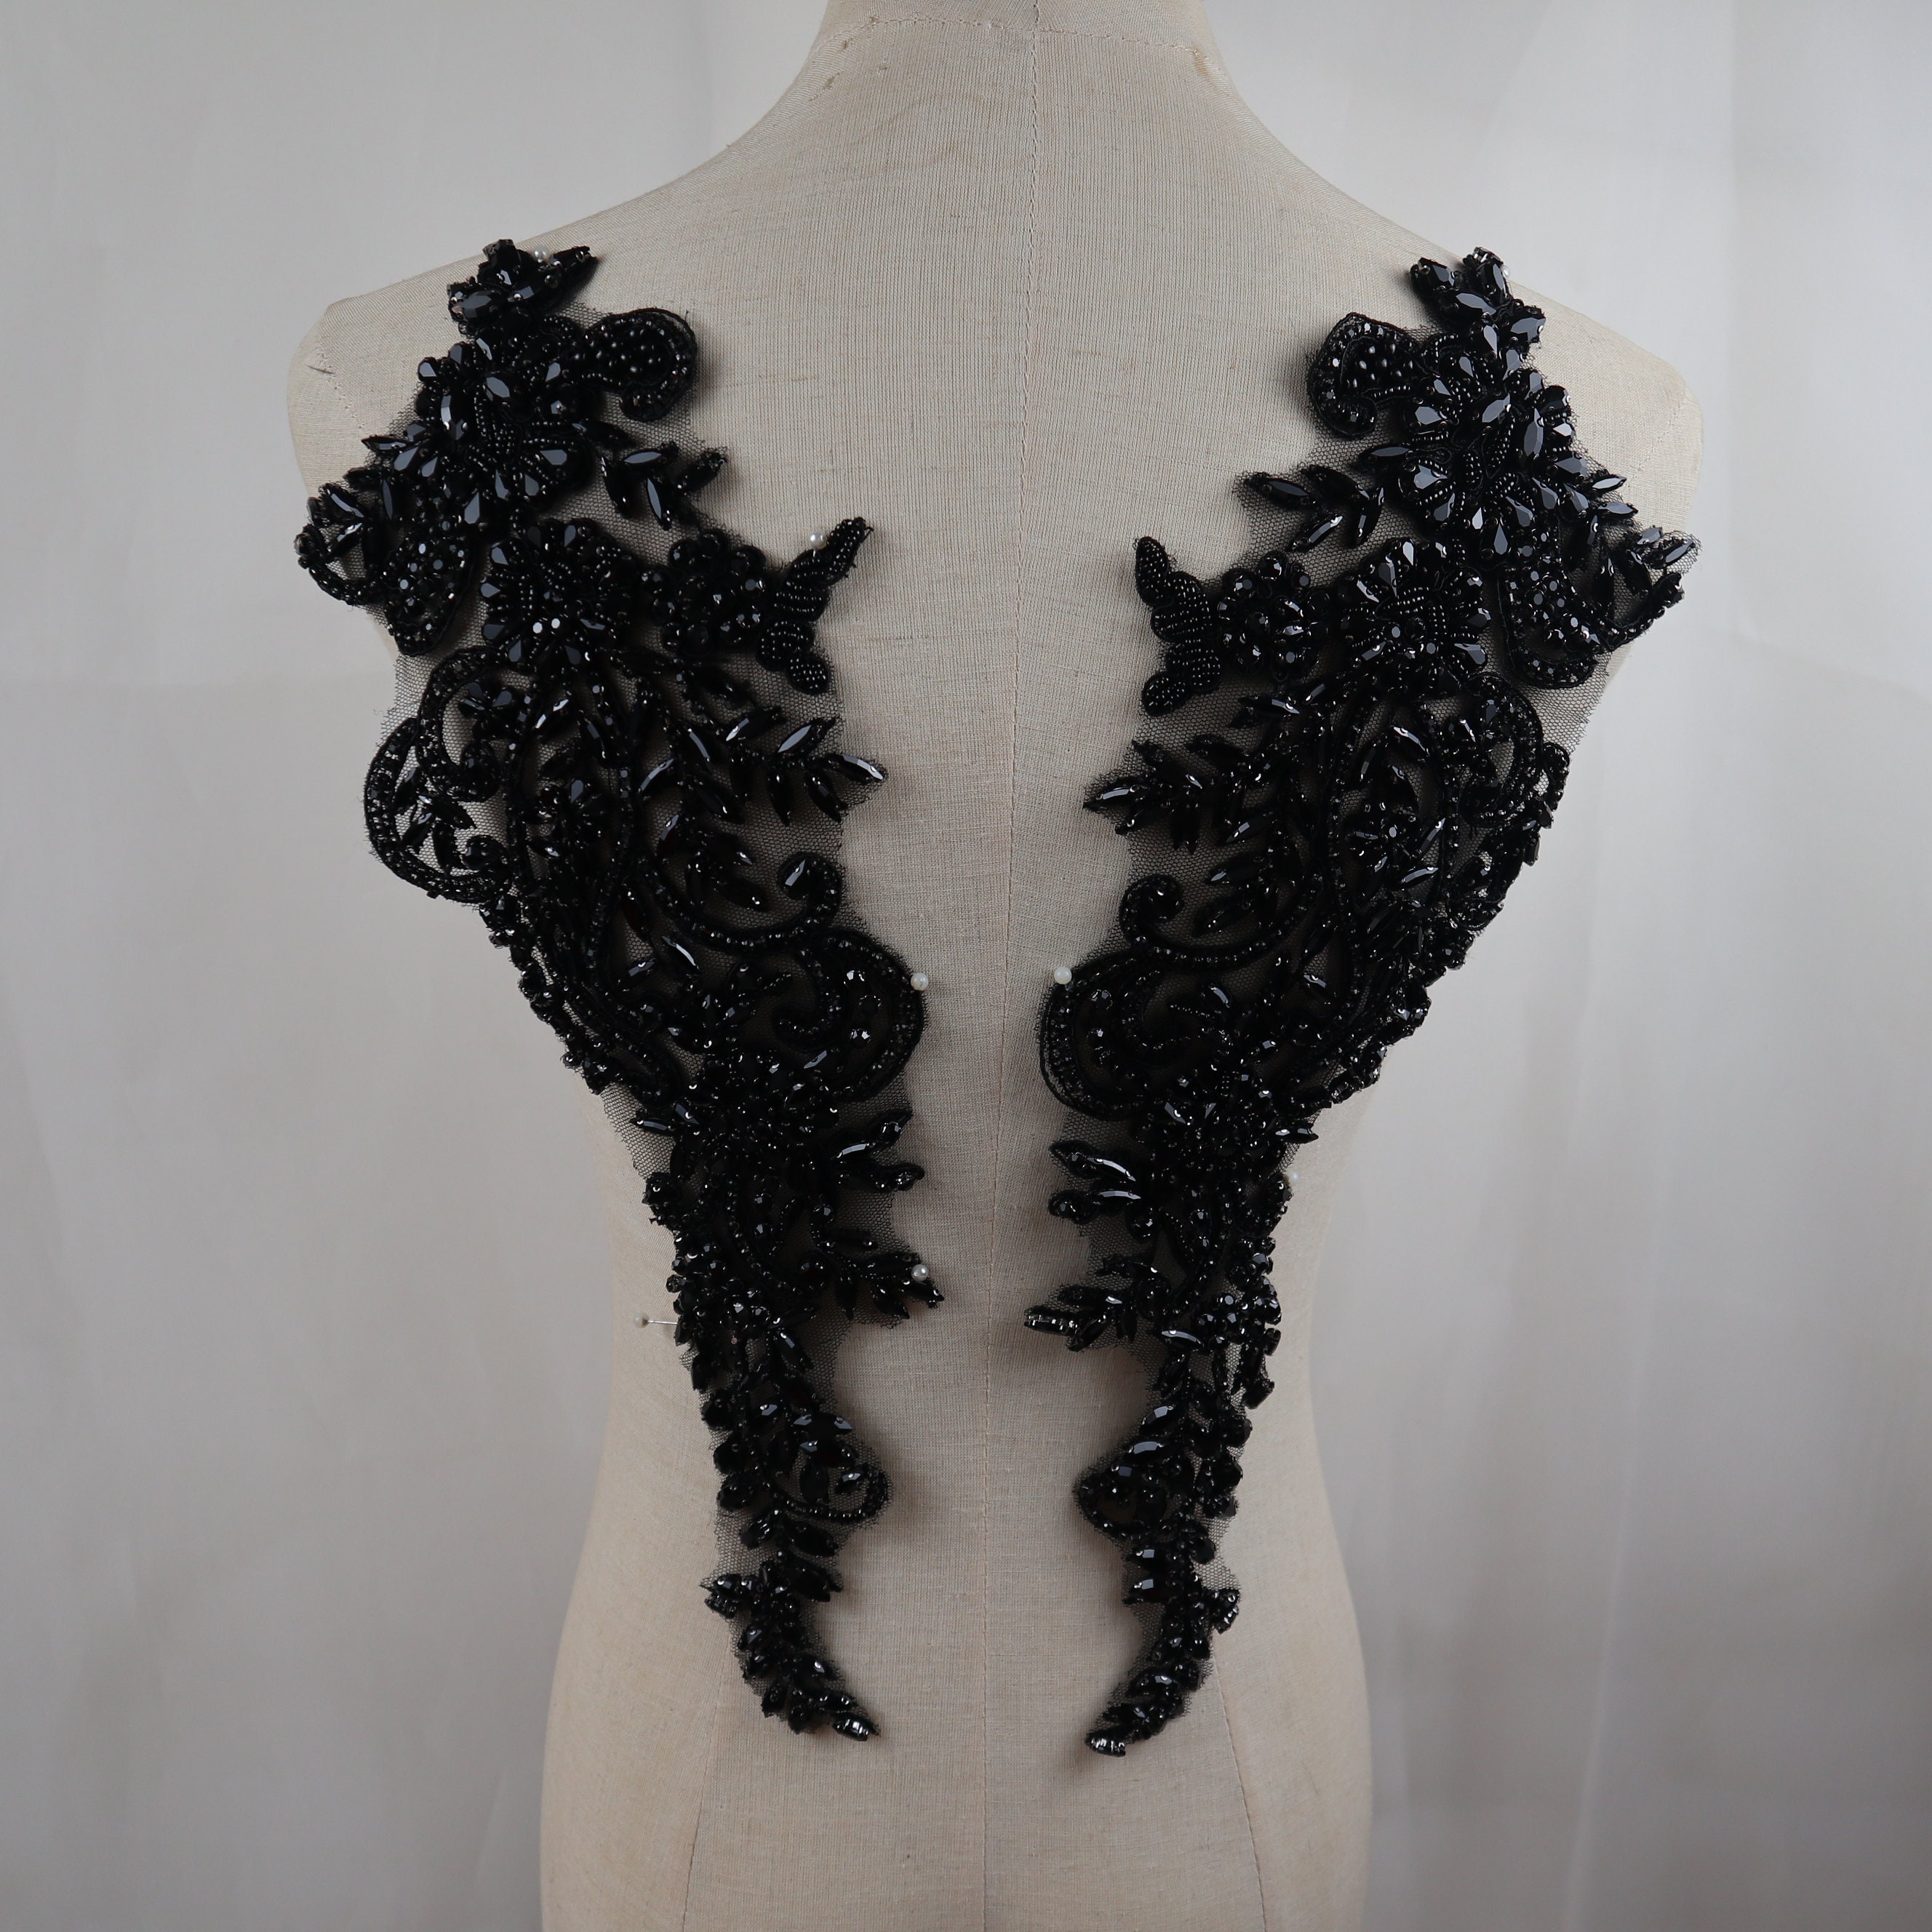 Black Applique lace, Bodice Applique Black Trim Beaded, Black 3D lace  Flower, lace Fabric Black Tulle for Dress BK (C7 Black)